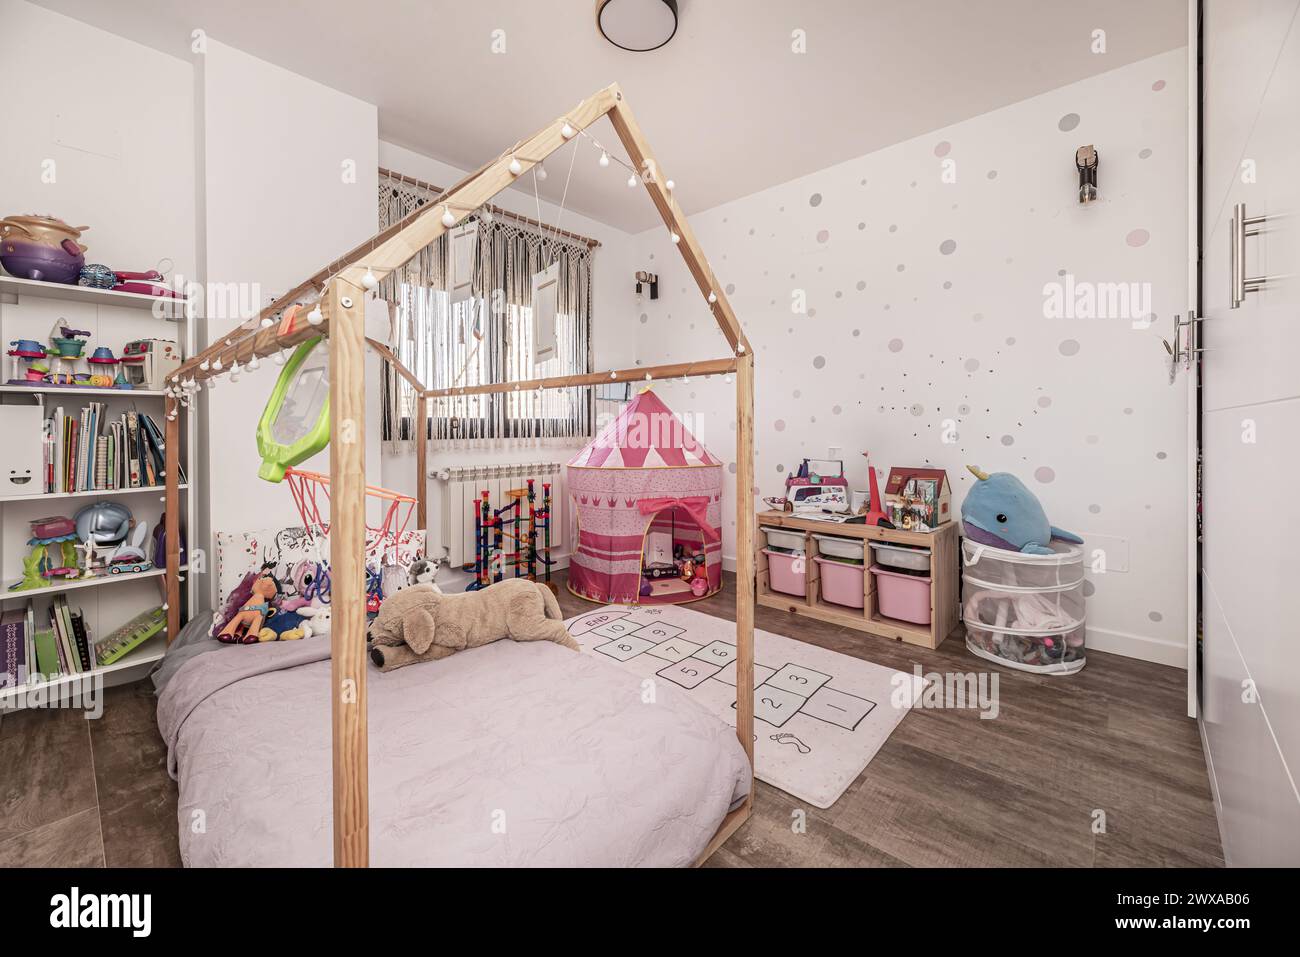 Kinderzimmer mit großem Einbauschrank mit weißen Türen, Regalen voller Bücher und Spielzeug und einem Bett mit unbehandelter Holzstruktur Stockfoto